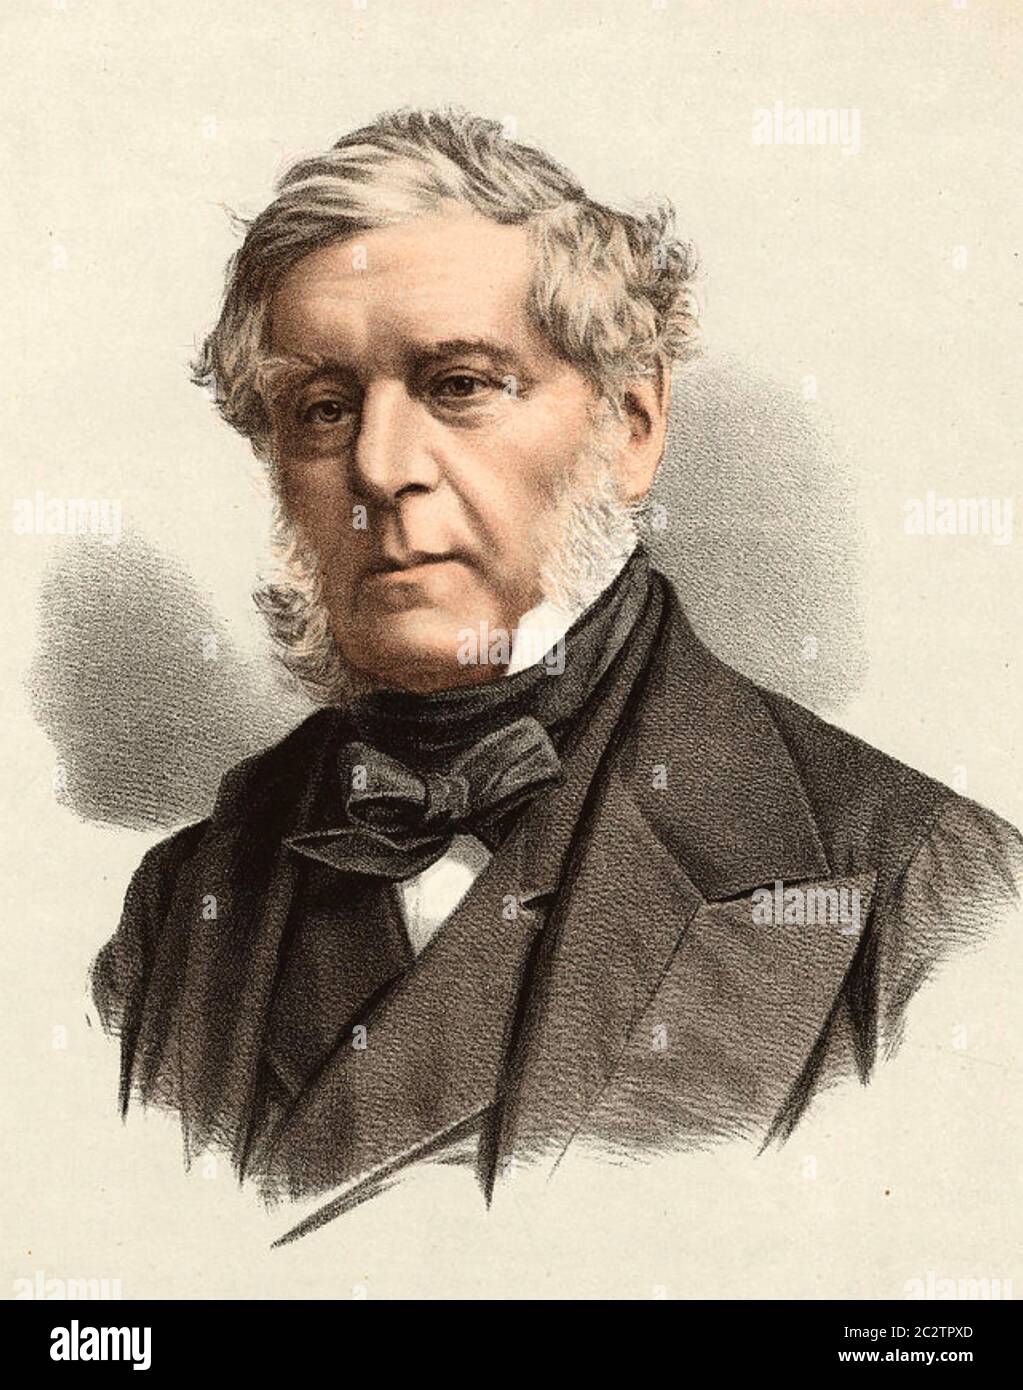 HENRY JOHN ROUS (1795-1877) Officier de la Marine royale, député et figure de premier plan dans les courses de chevaux Banque D'Images